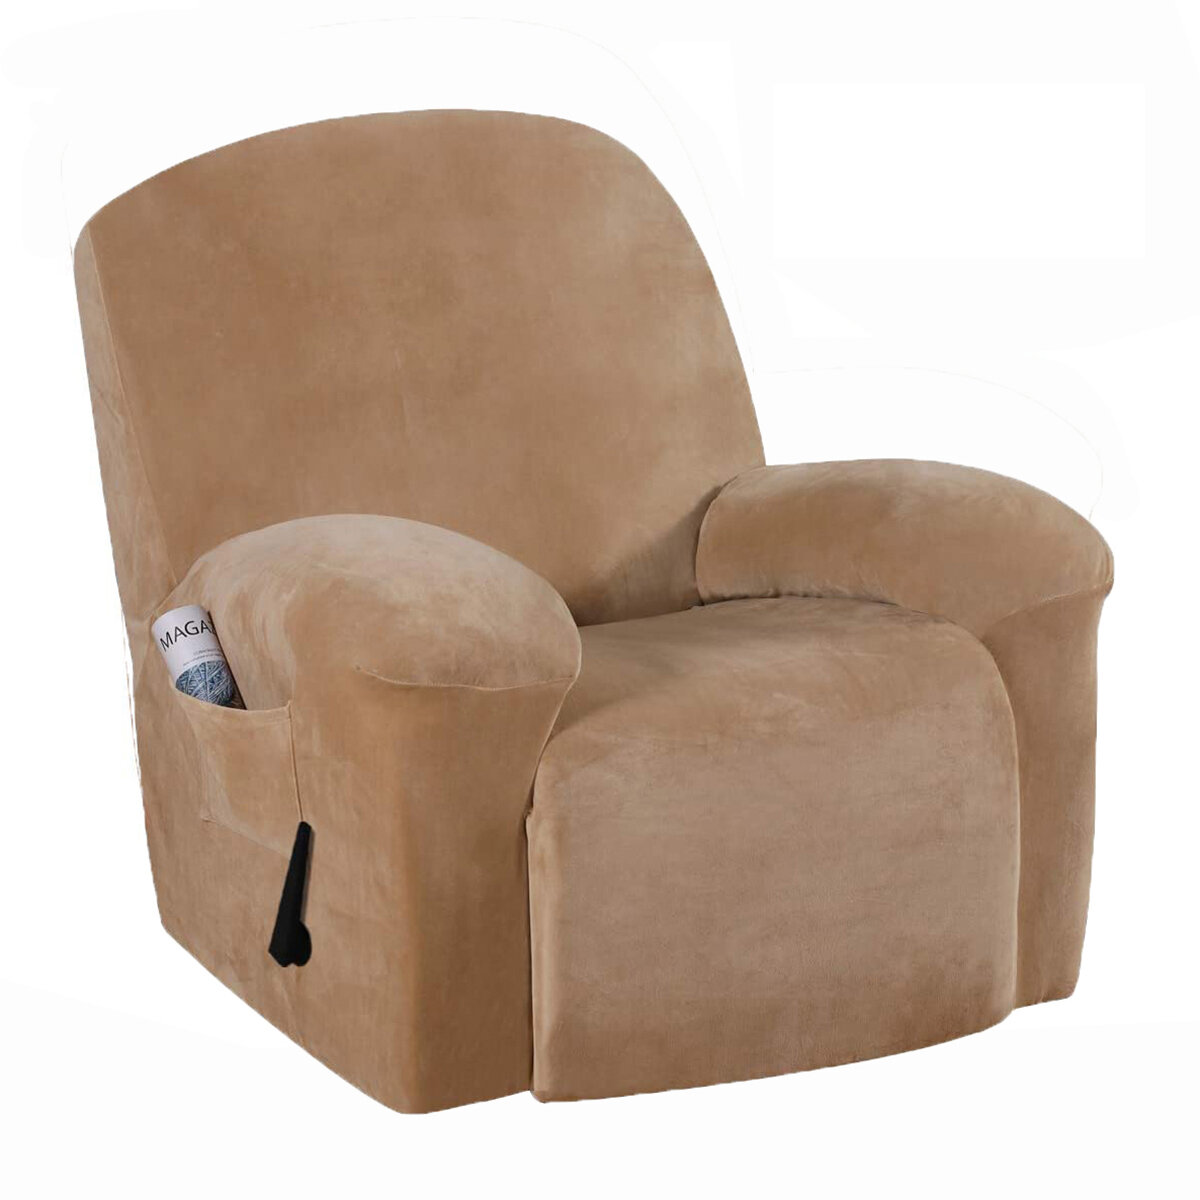 غطاء كرسي مخملي للتغطية الكاملة ، واقي مقعد أريكة مطاطي ، غطاء قابل للتمدد ، غطاء كرسي بذراعين مضاد للغبار ، ديكورات أثا